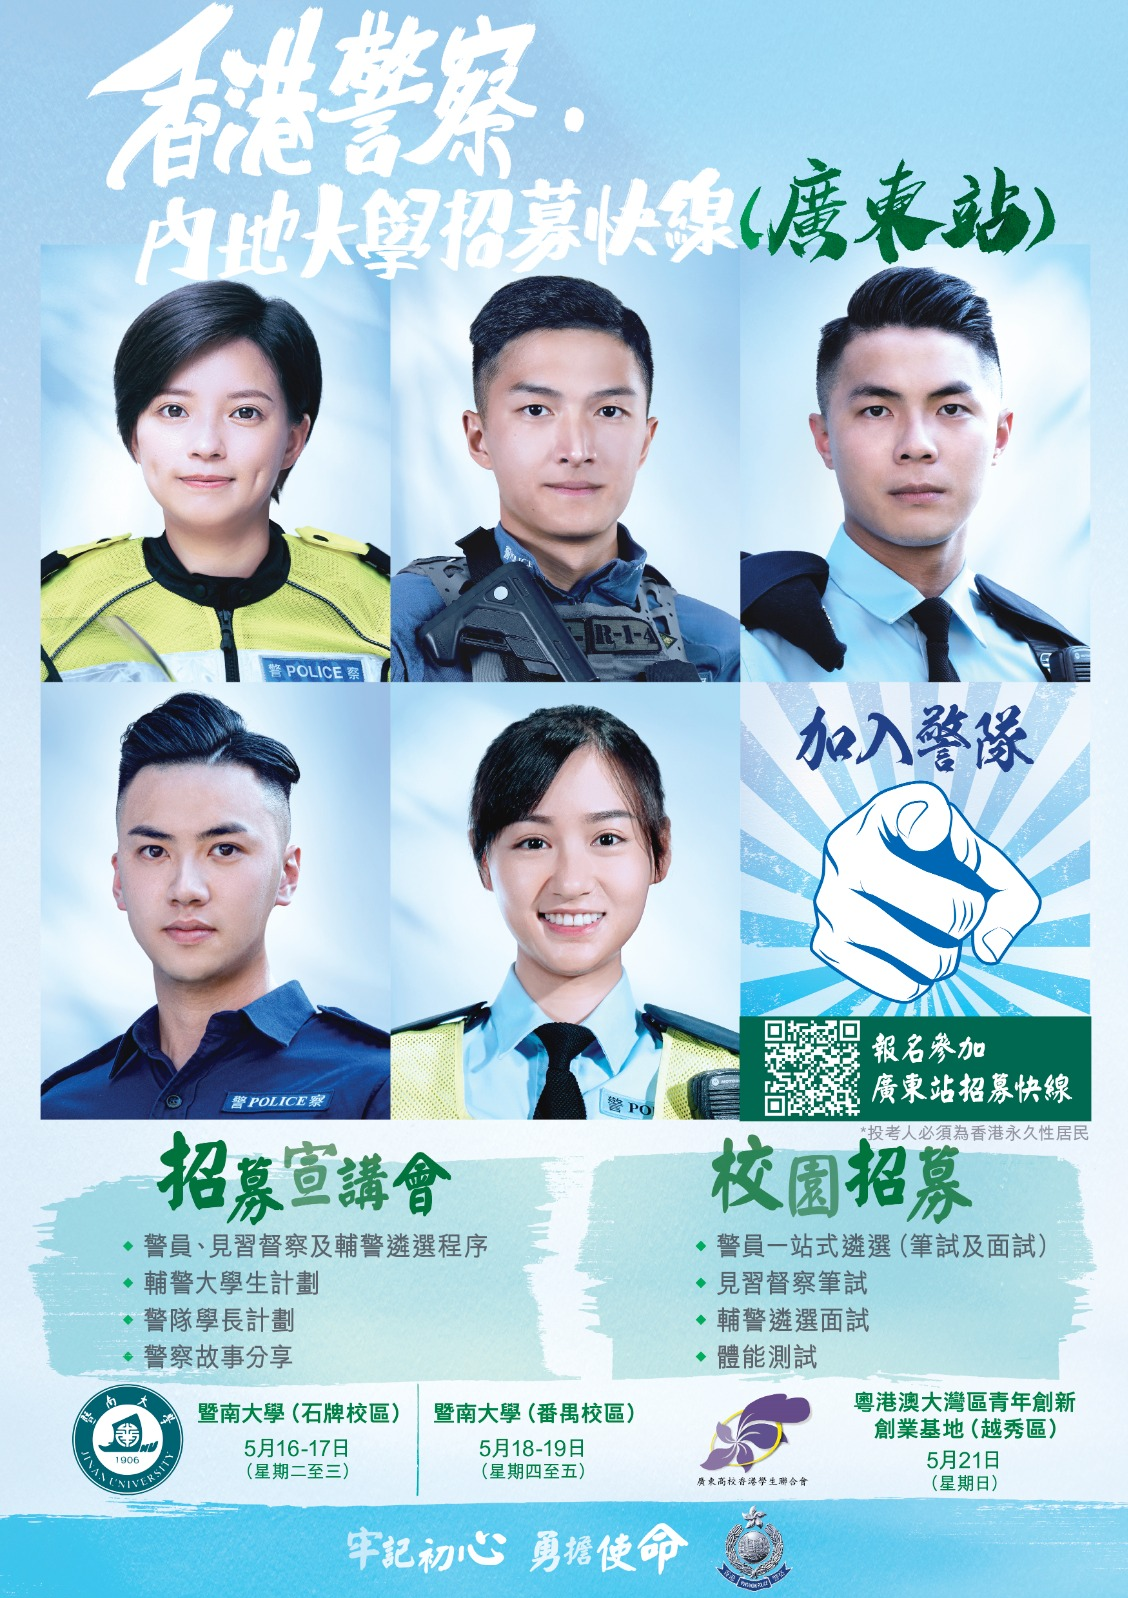 「香港警察‧內地大學招募快線」- 北京站